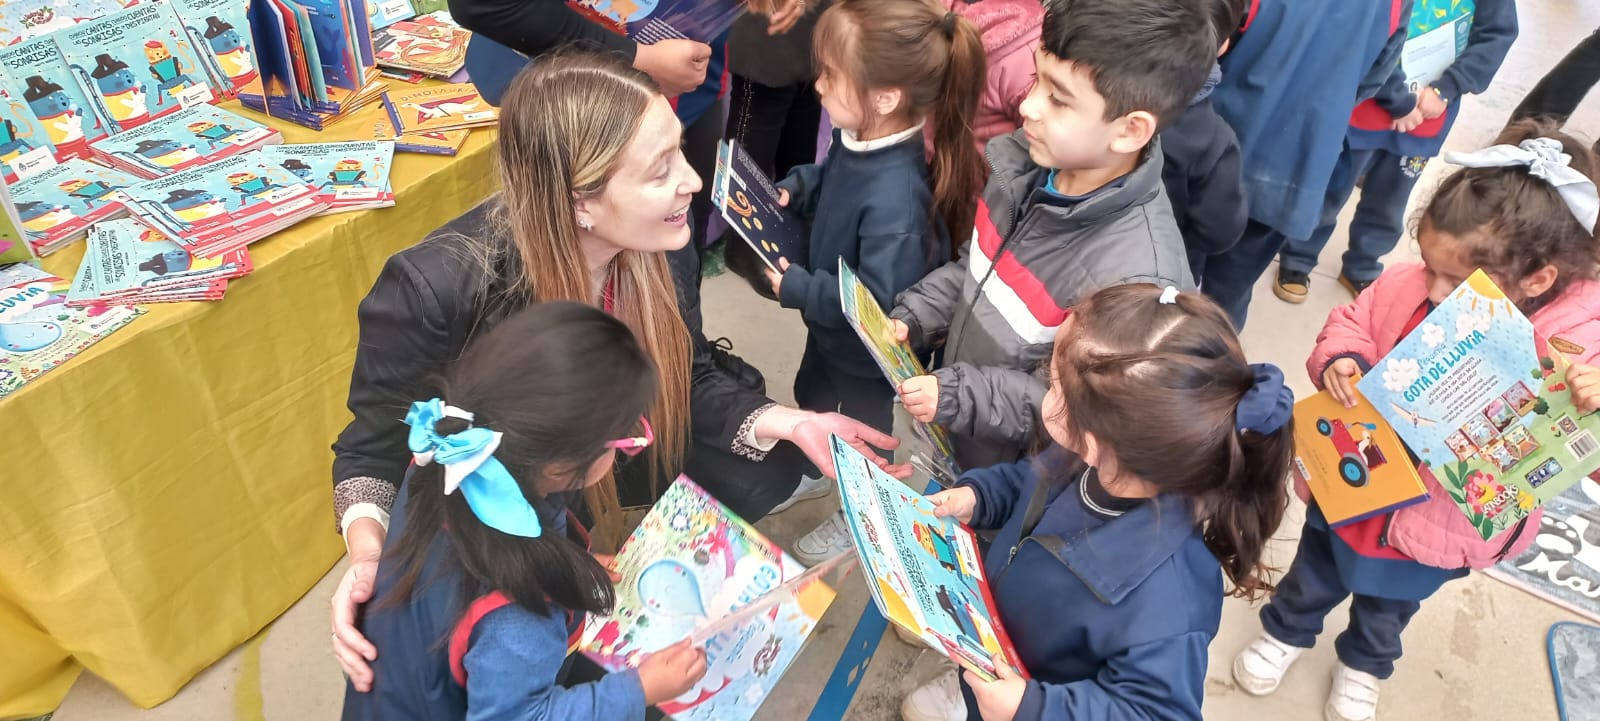 Educación entregó libros a los Jardines de infantes de los Colegios Virgen Niña y Juan Pablo II3